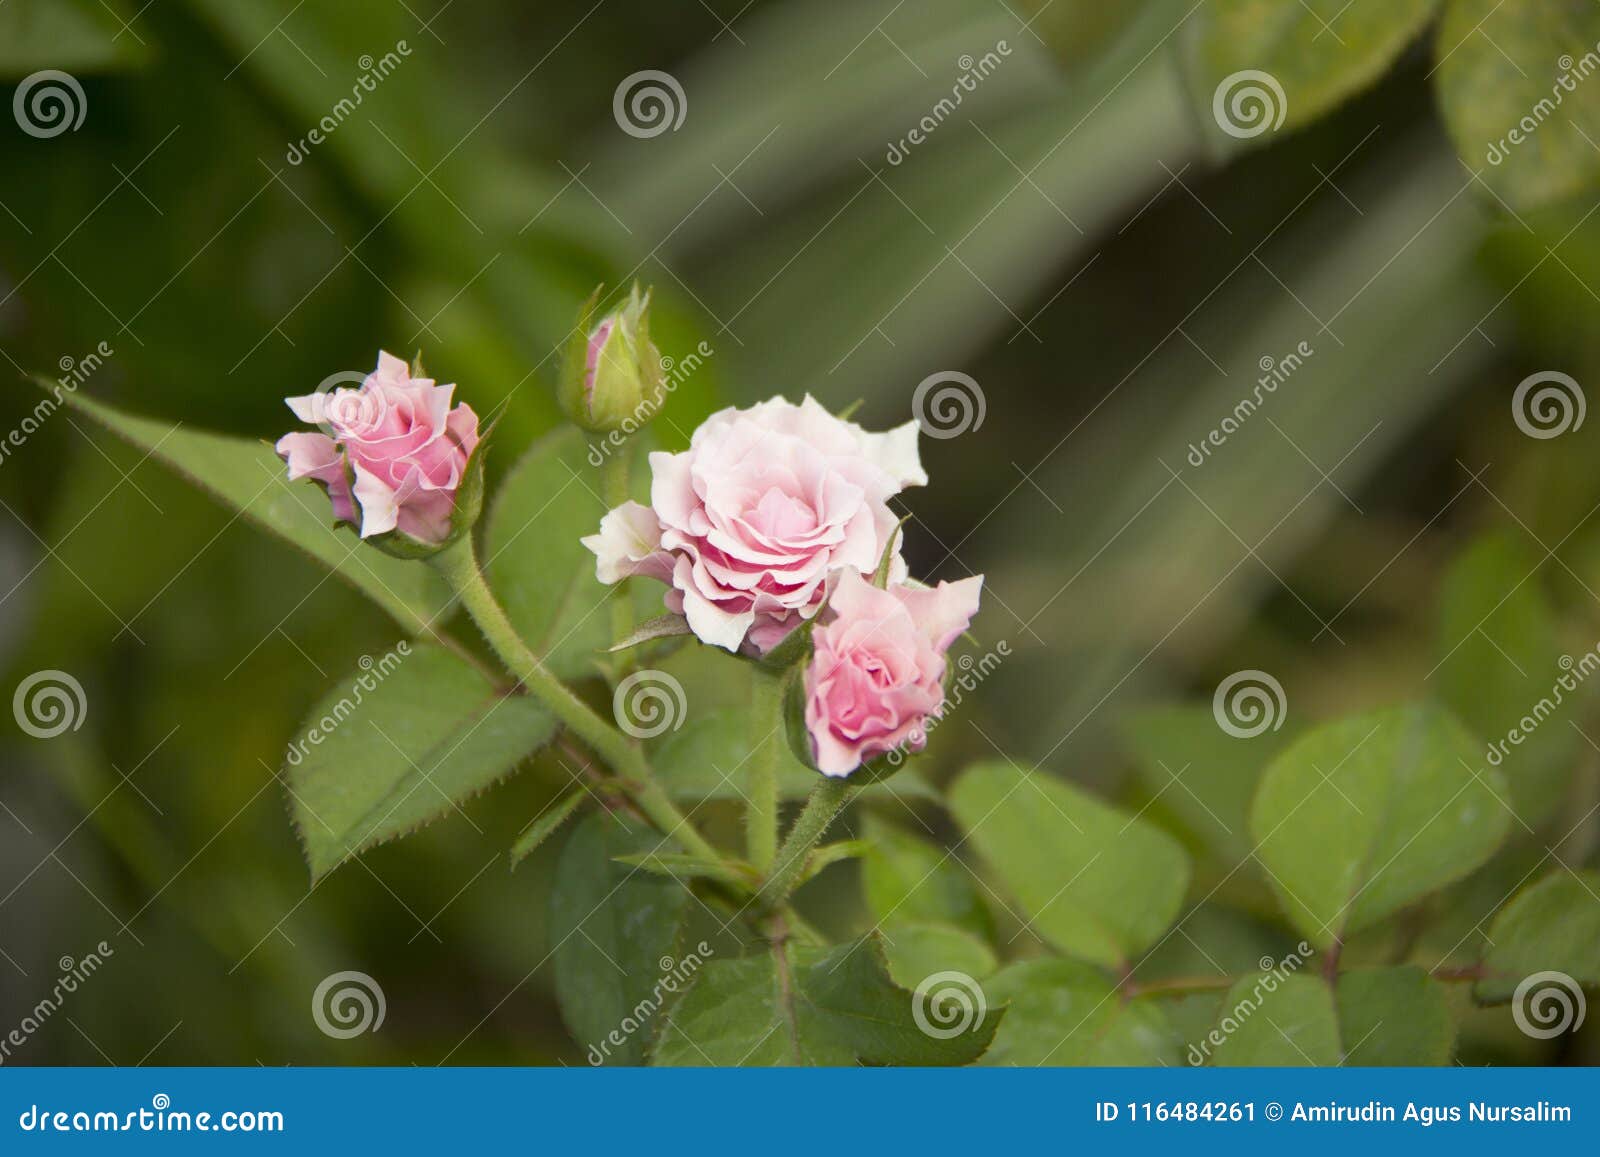 a rose pink flower. mawar berduri. bunga mawar.